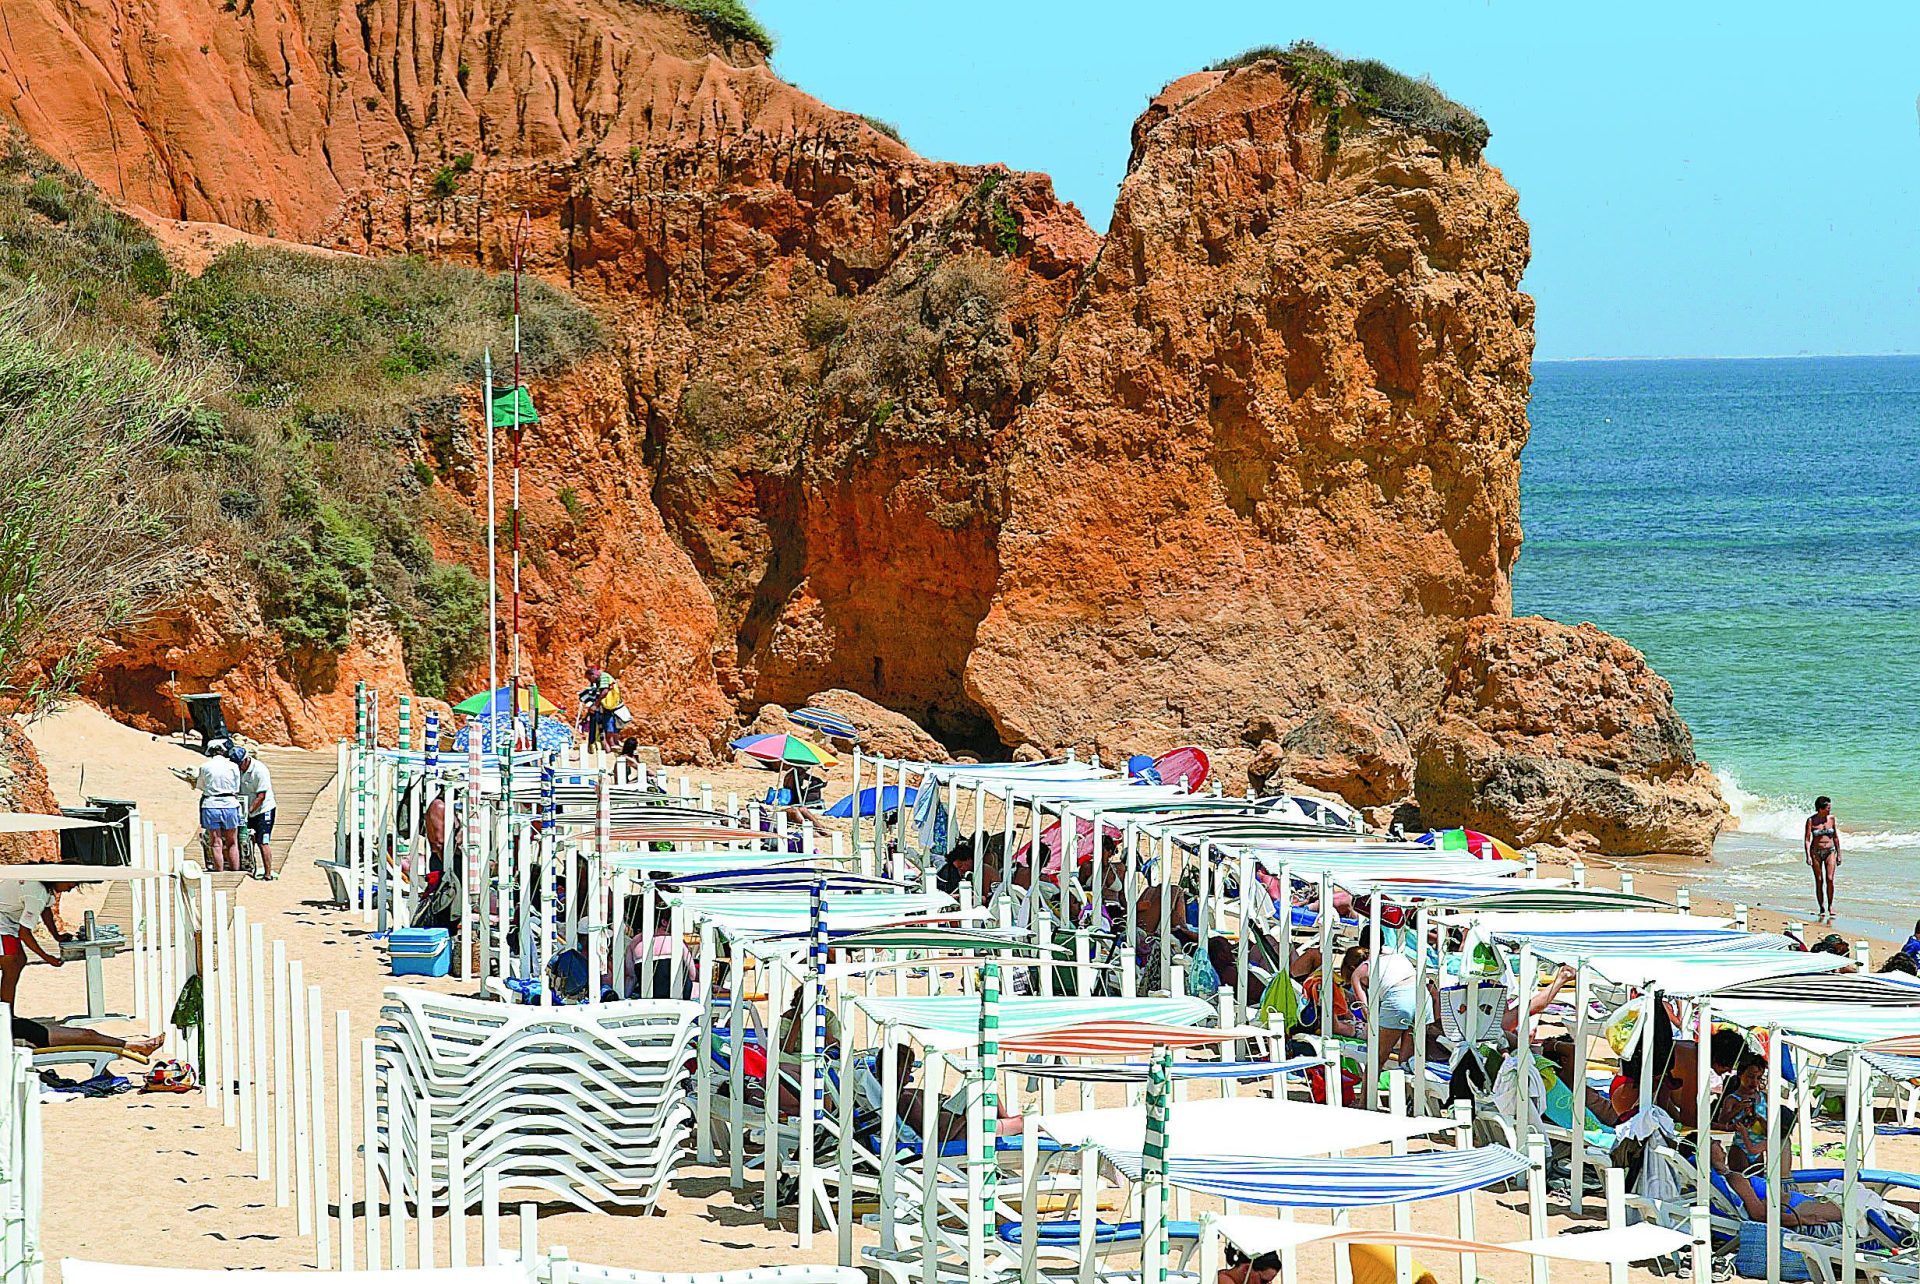 75 praias em perigo de derrocada no Algarve